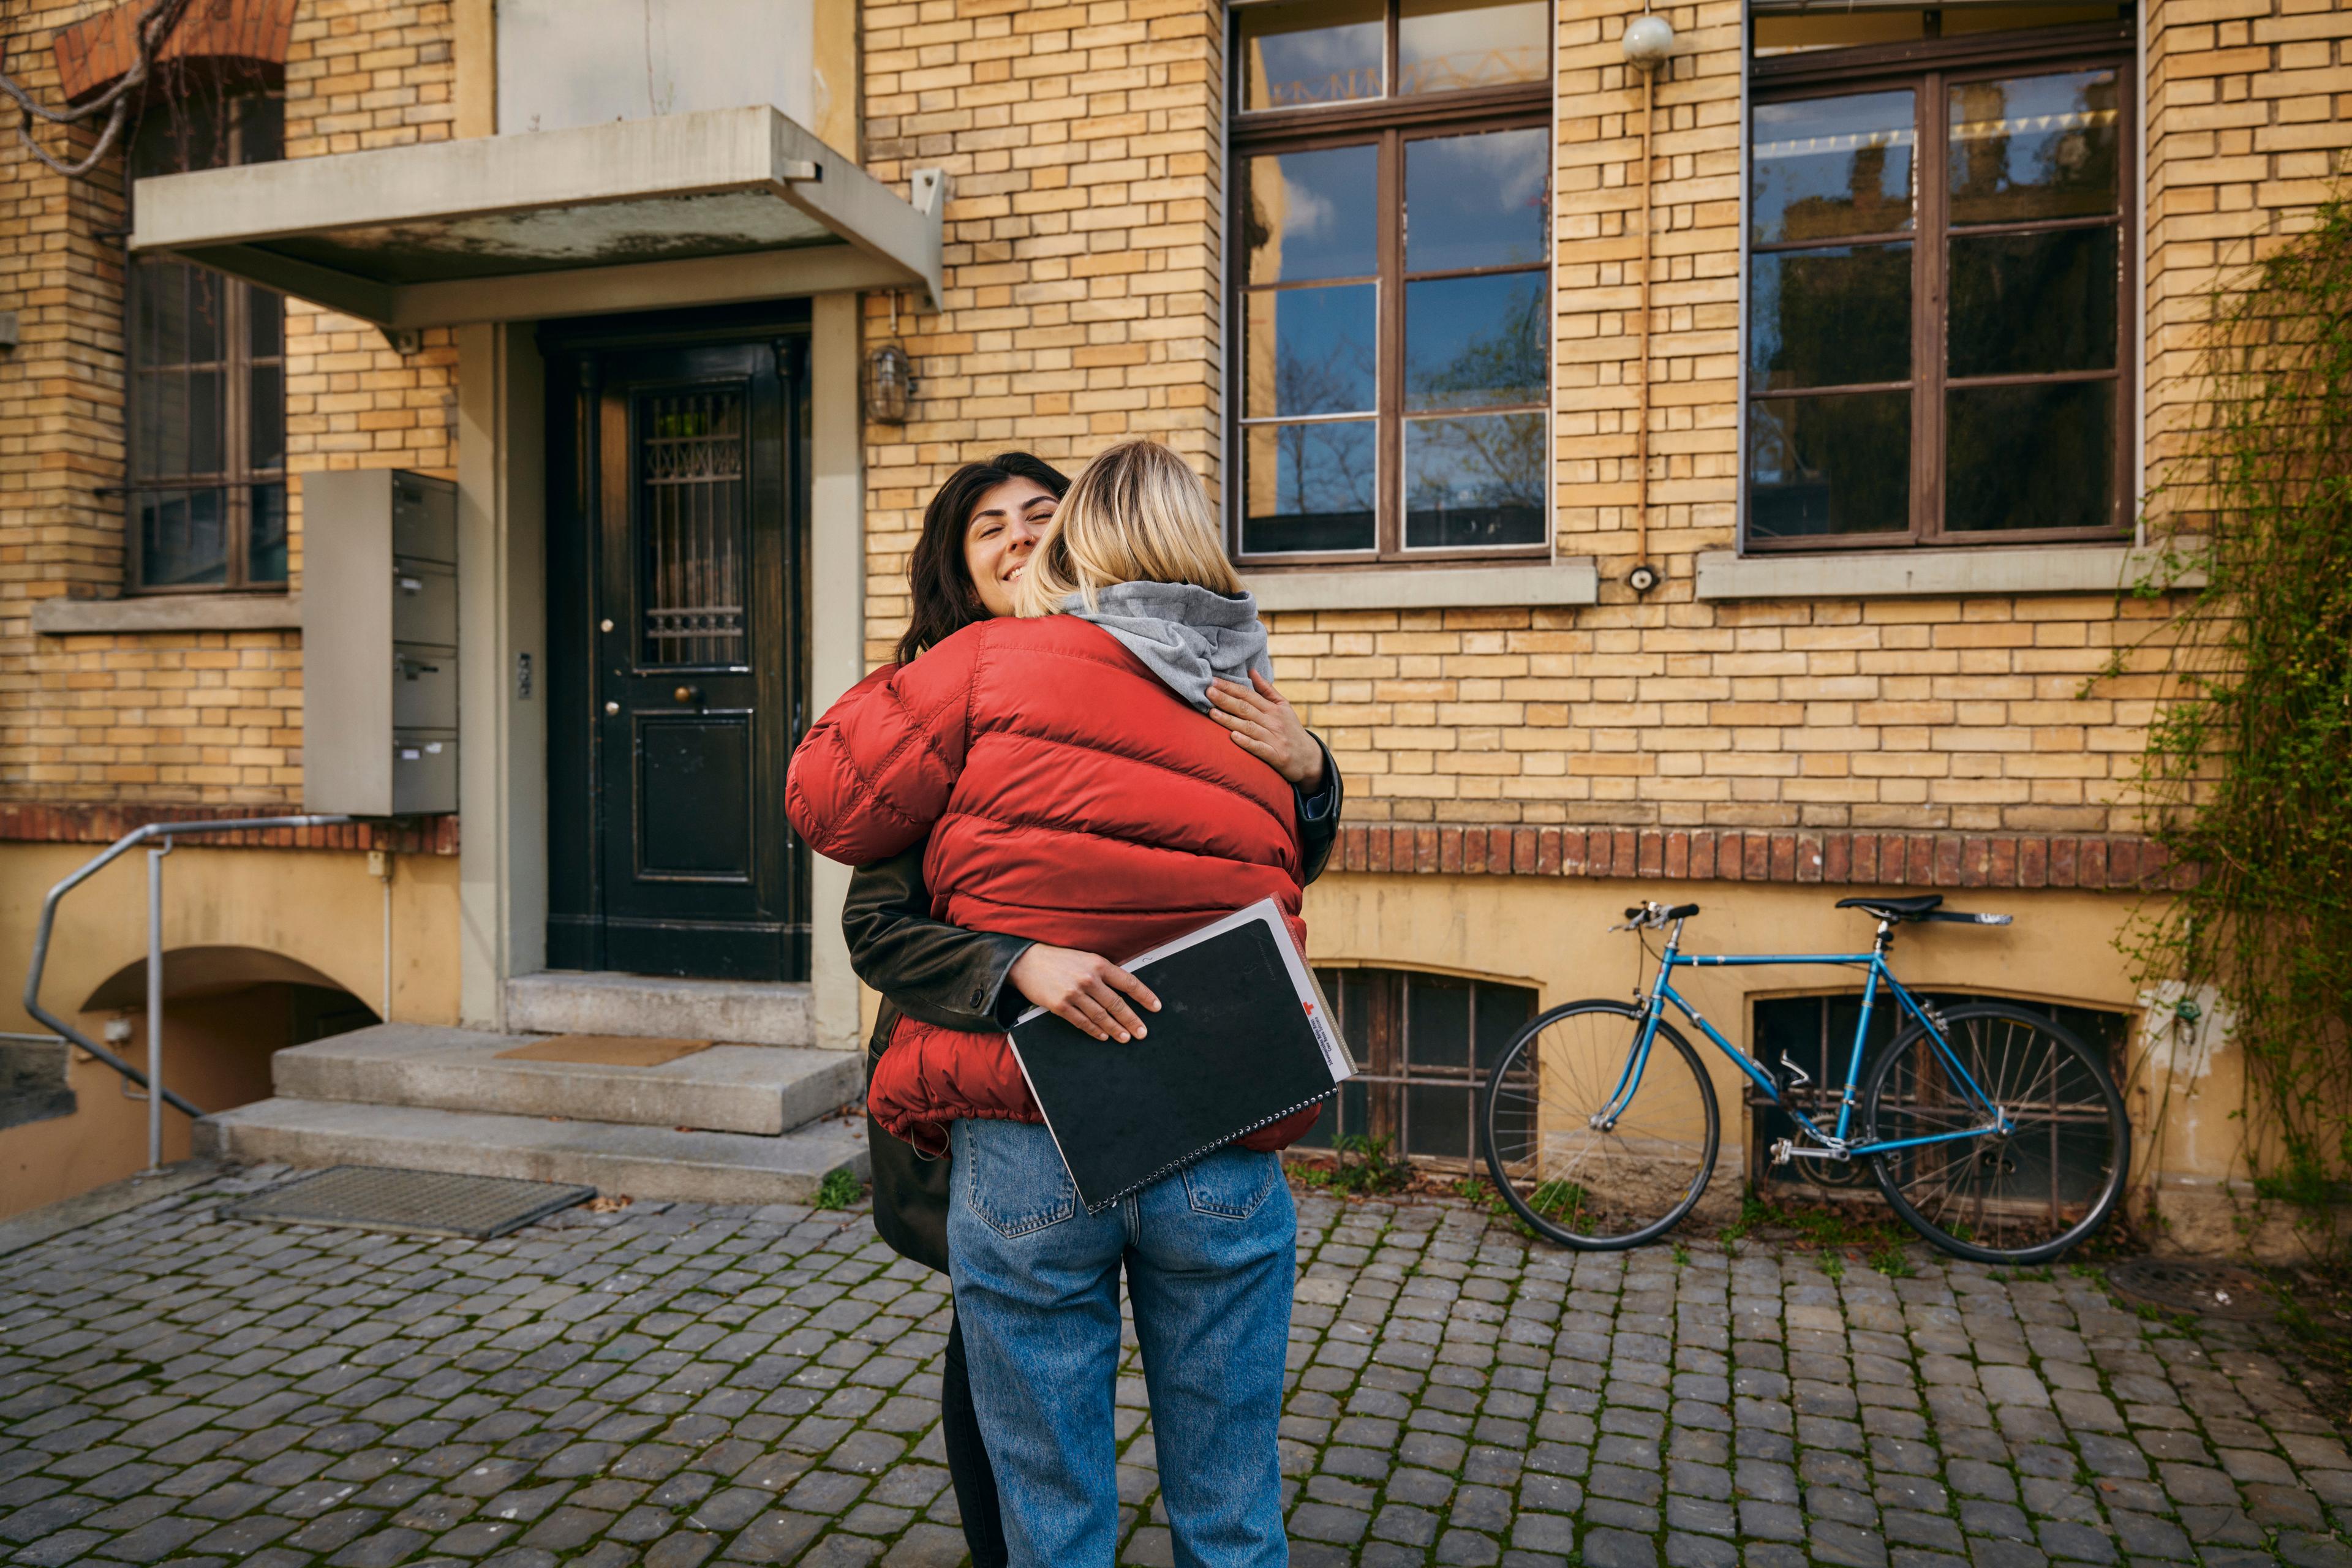 Deux femmes se prennent dans les bras devant l’entrée d’une maison. L’une, en veste rouge, est de dos, tandis que l’autre, qui tient dans ses mains des documents, affiche un grand sourire.